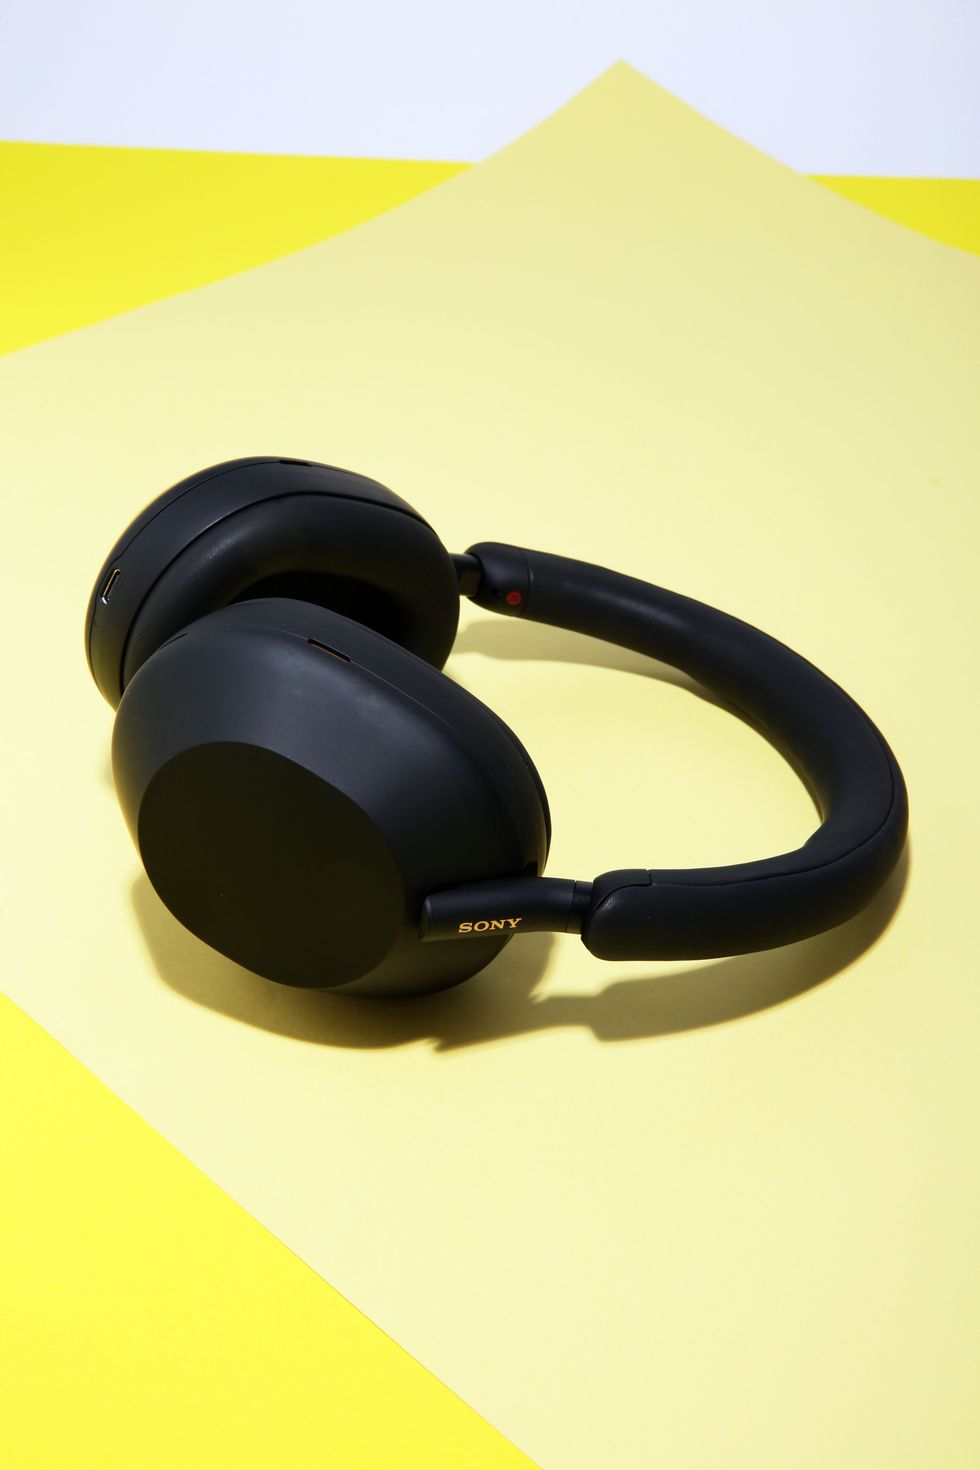 Oferta en los Sony WH-1000XM4, los mejores auriculares